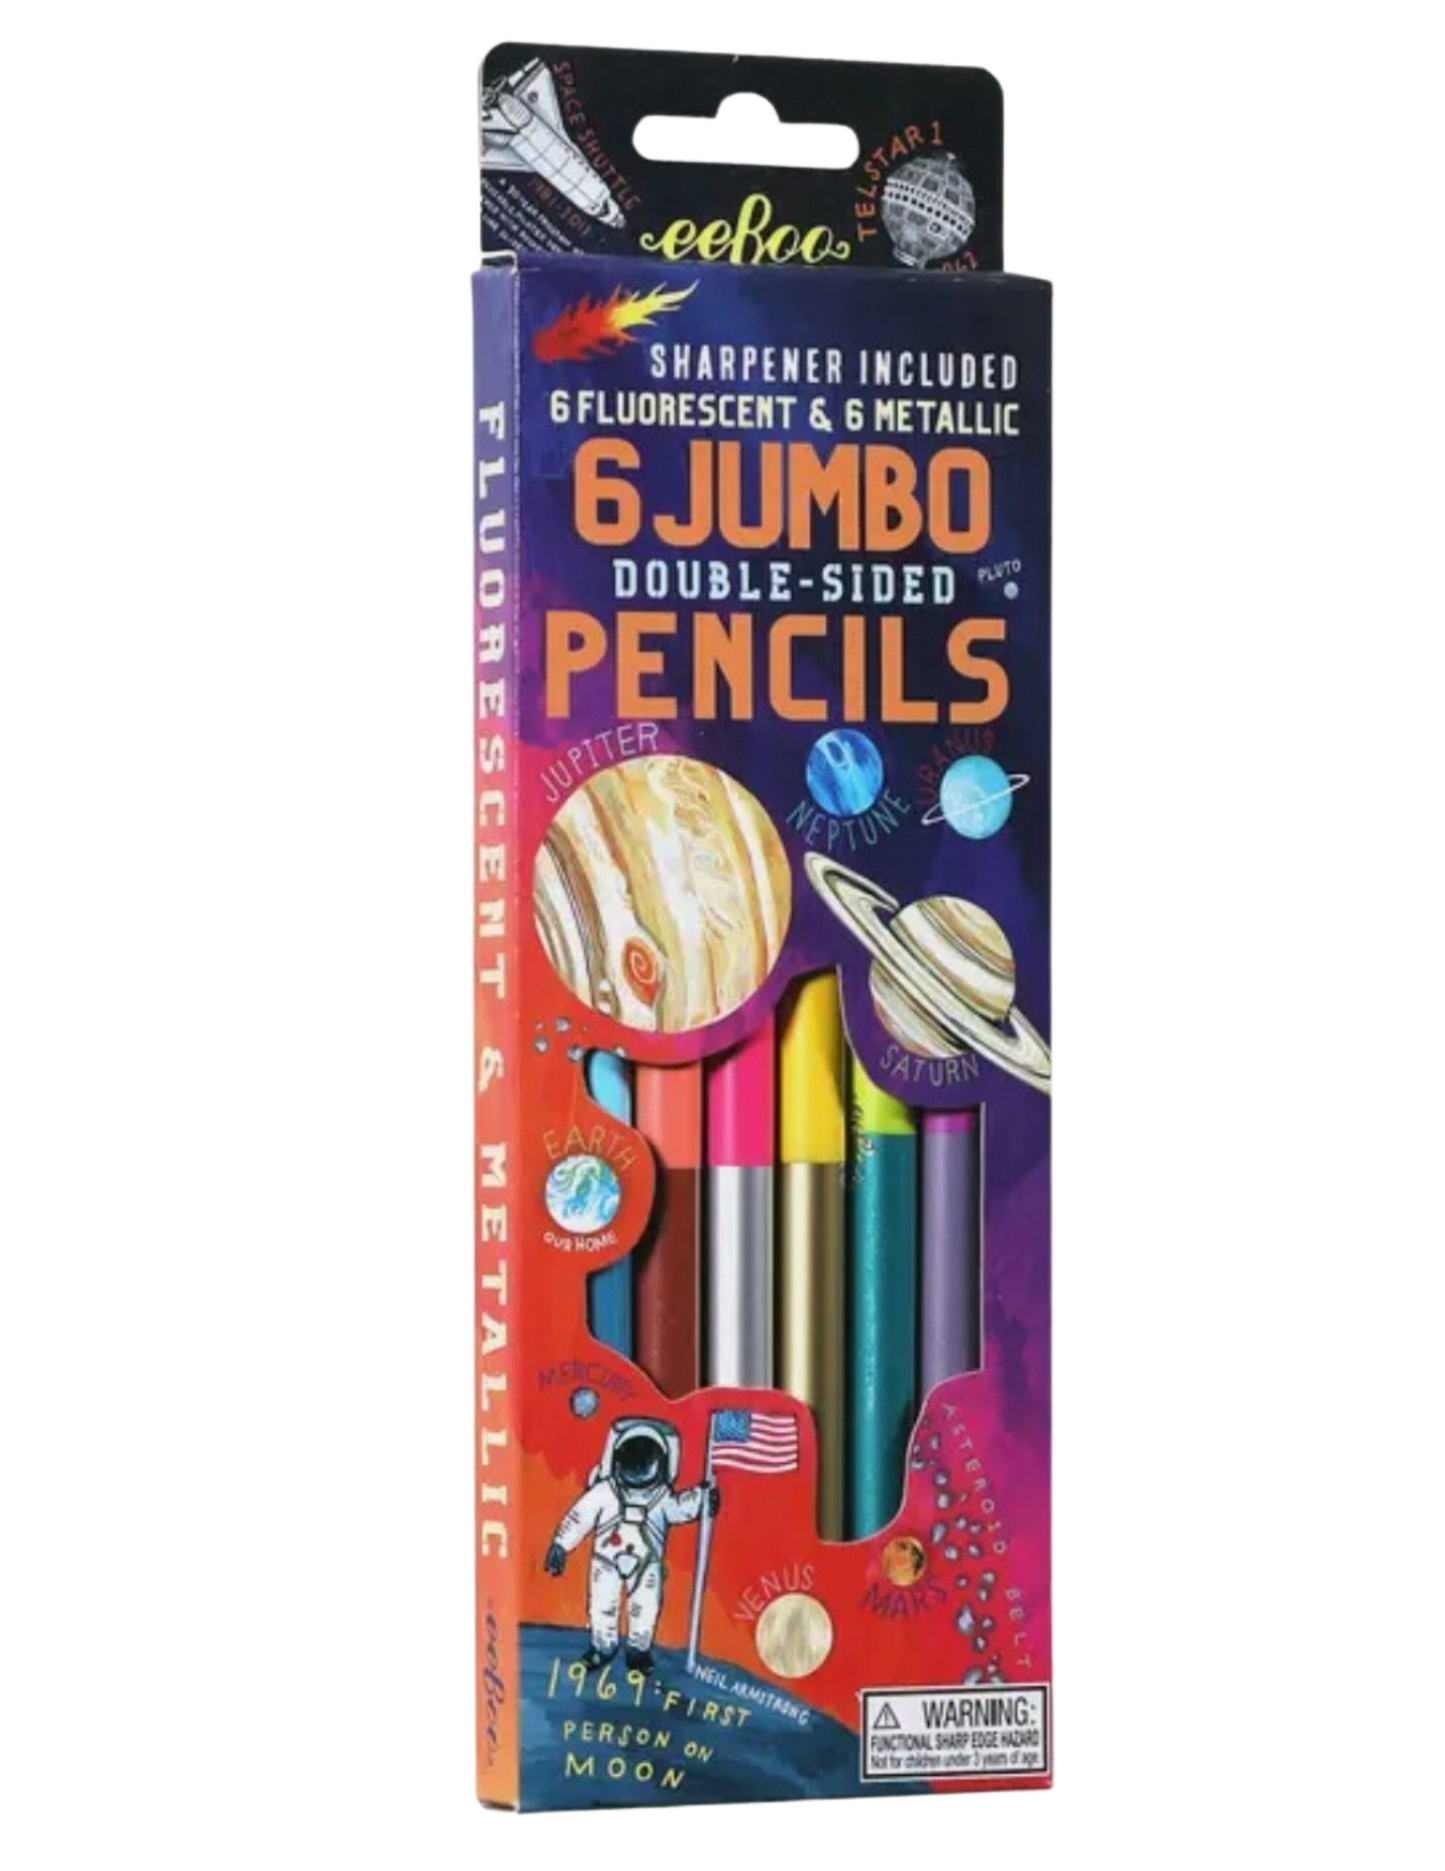 6 Jumbo Double-Sided Pencils